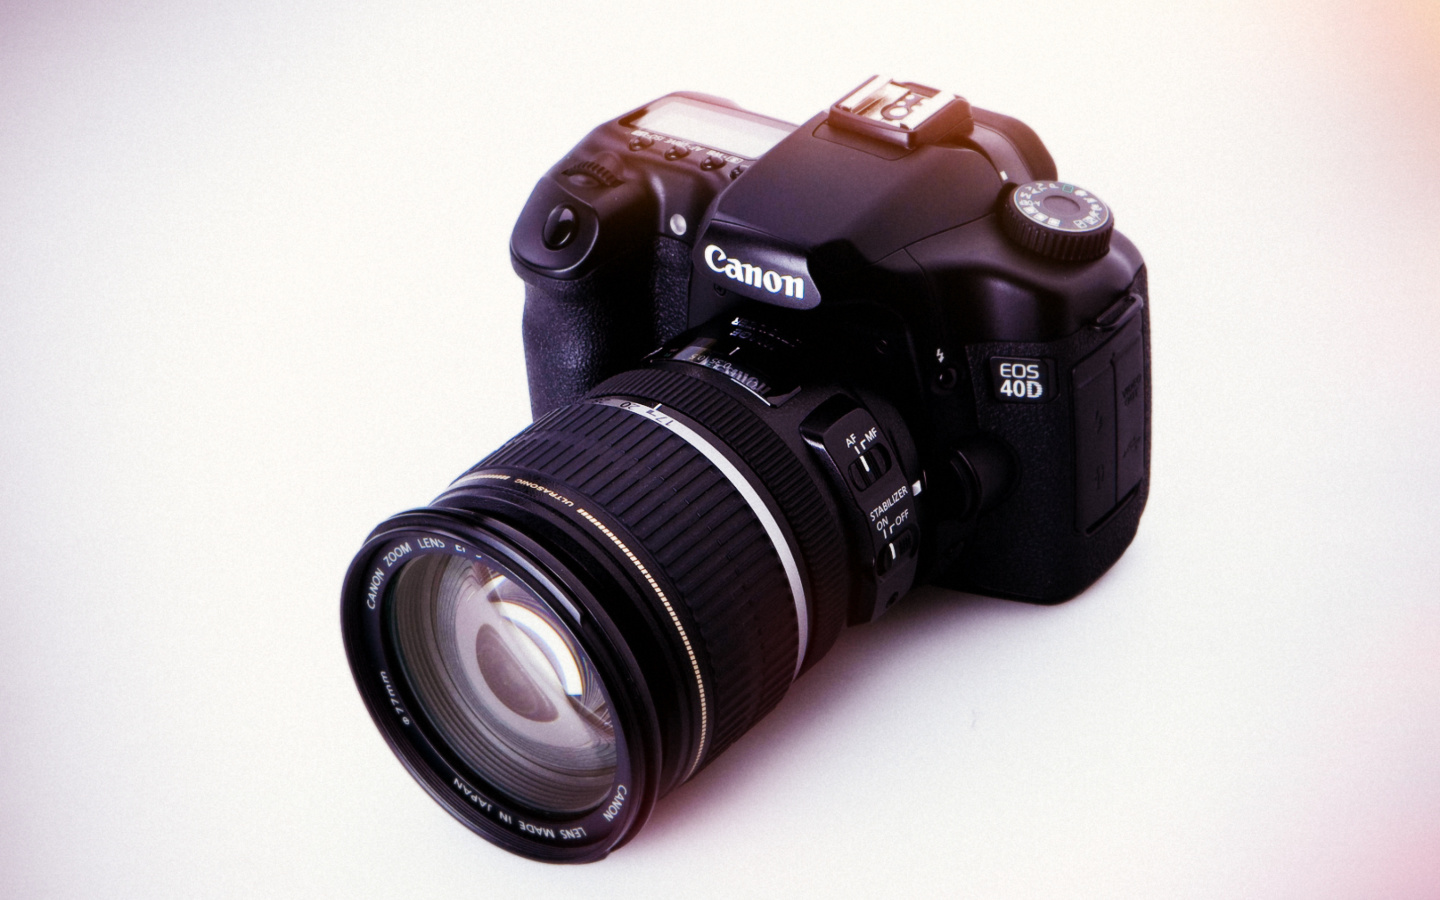 Canon EOS 40D Digital SLR Camera wallpaper 1440x900